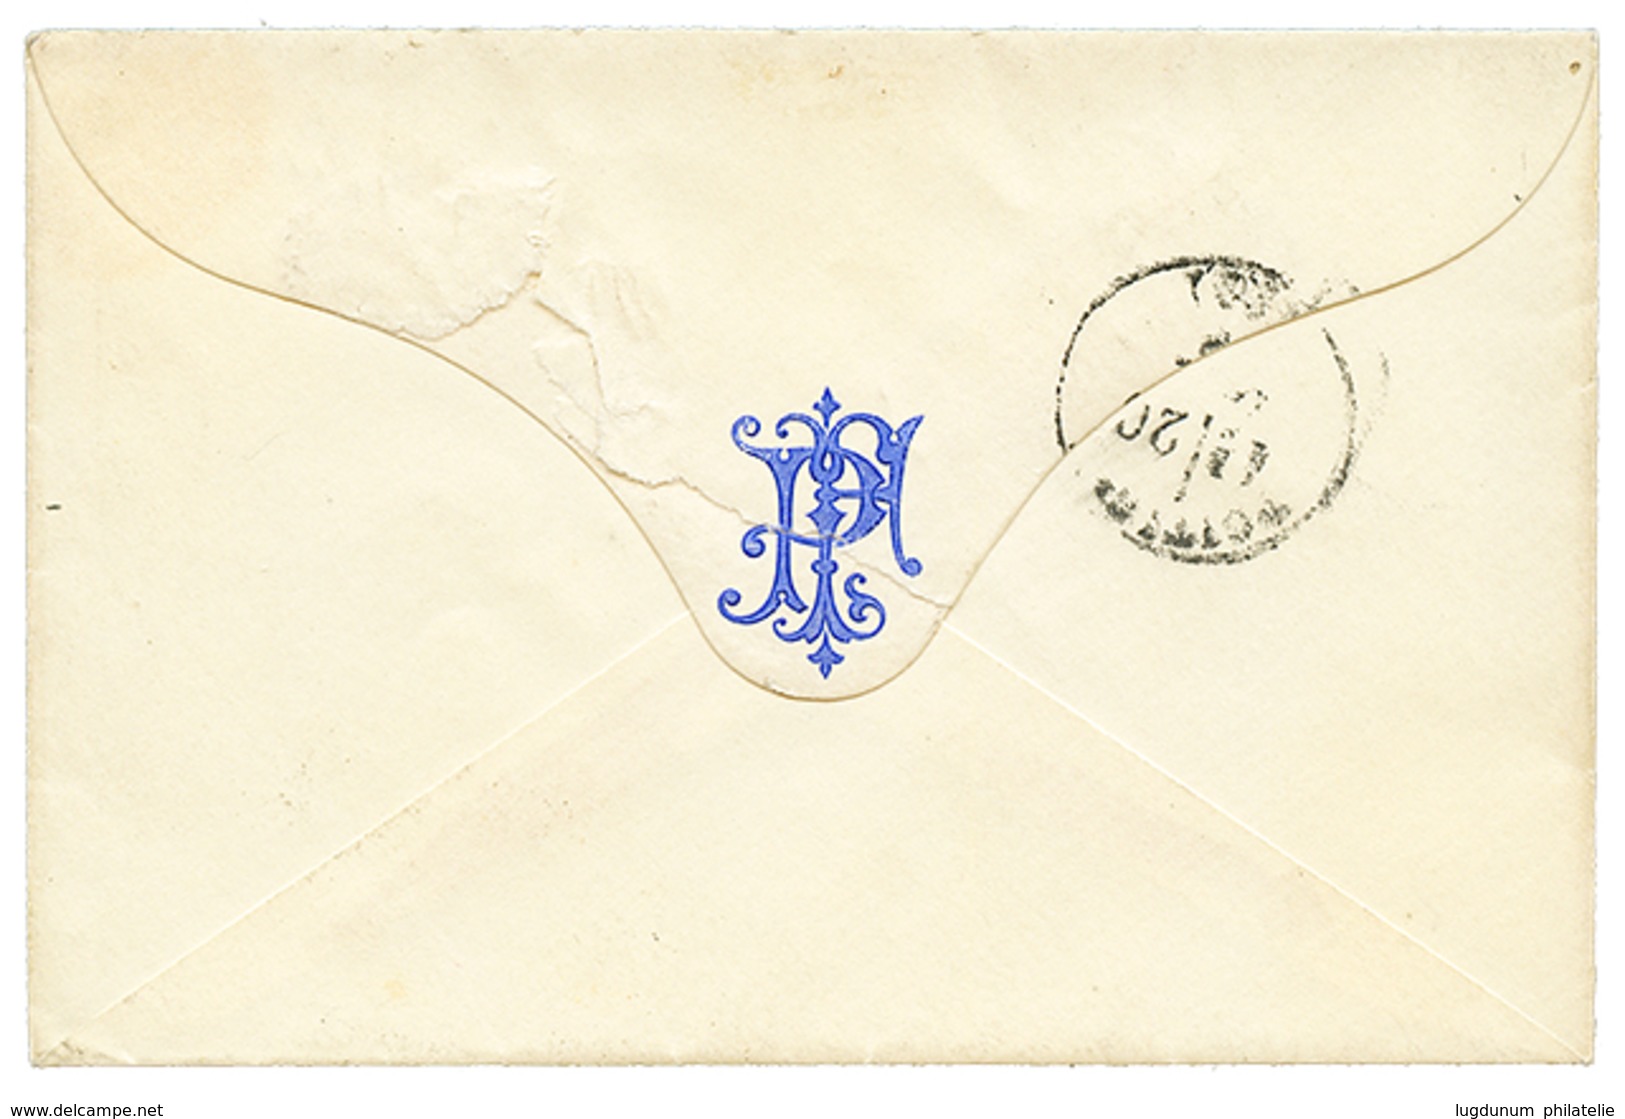 "BALLON RETARDE Du NEPTUNE" : 20c(n°29) Obl. Etoile 3 + PARIS 21 Sept 70 Sur Enveloppe Pour POITIERS. RARE. Signé SOLUPH - Guerra Del 1870